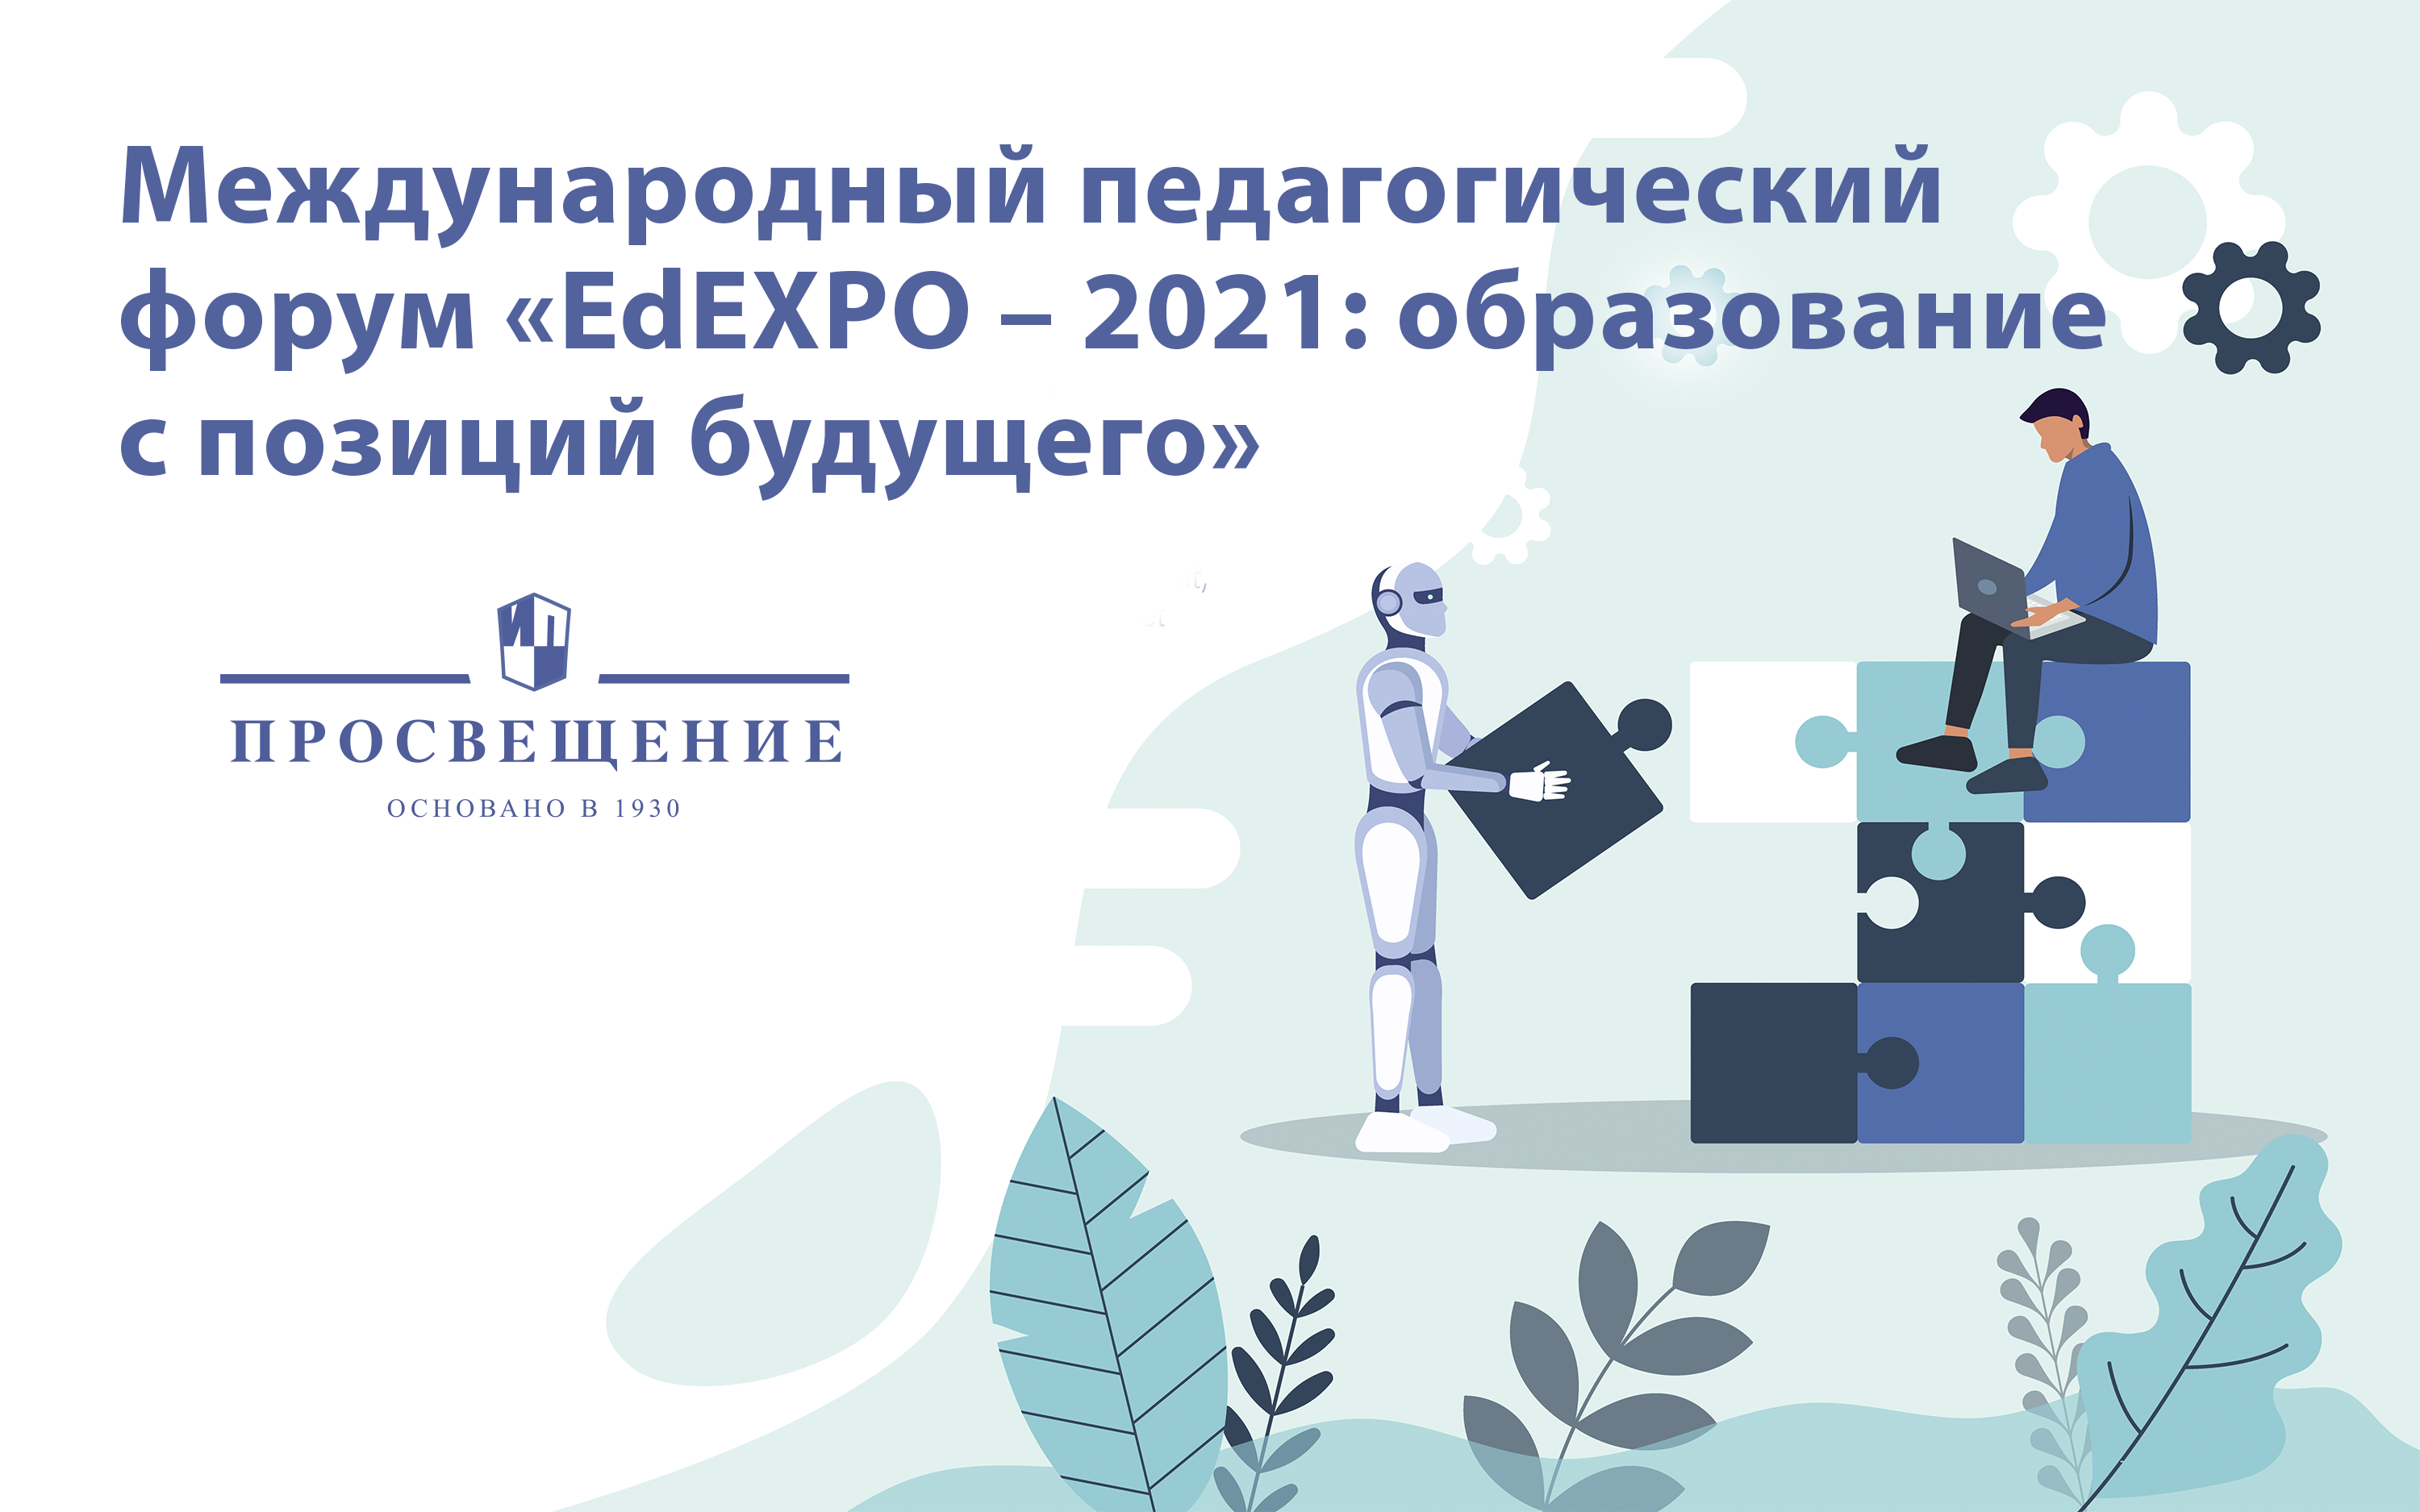 Эксперт ГК «Просвещение» примет участие в педагогическом форуме EdEXPO – 2021